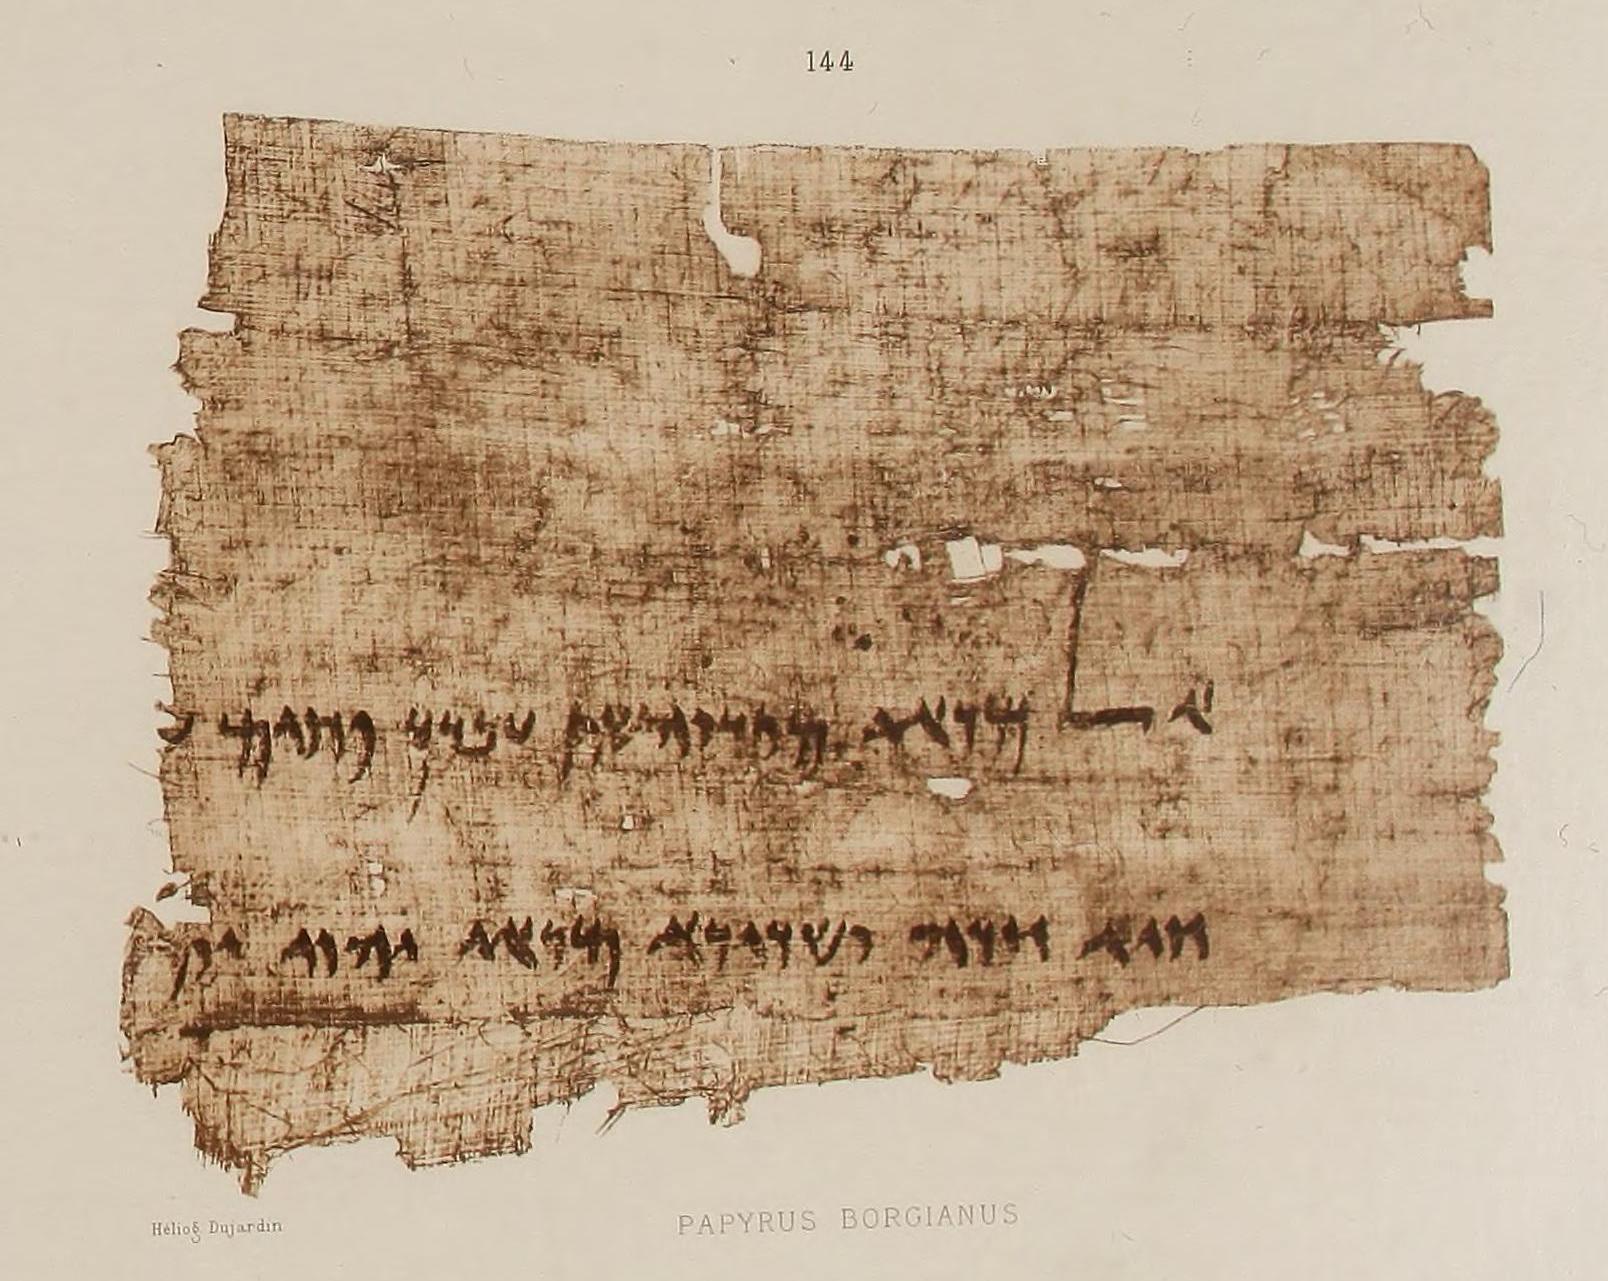 Papyrus - Wikipedia